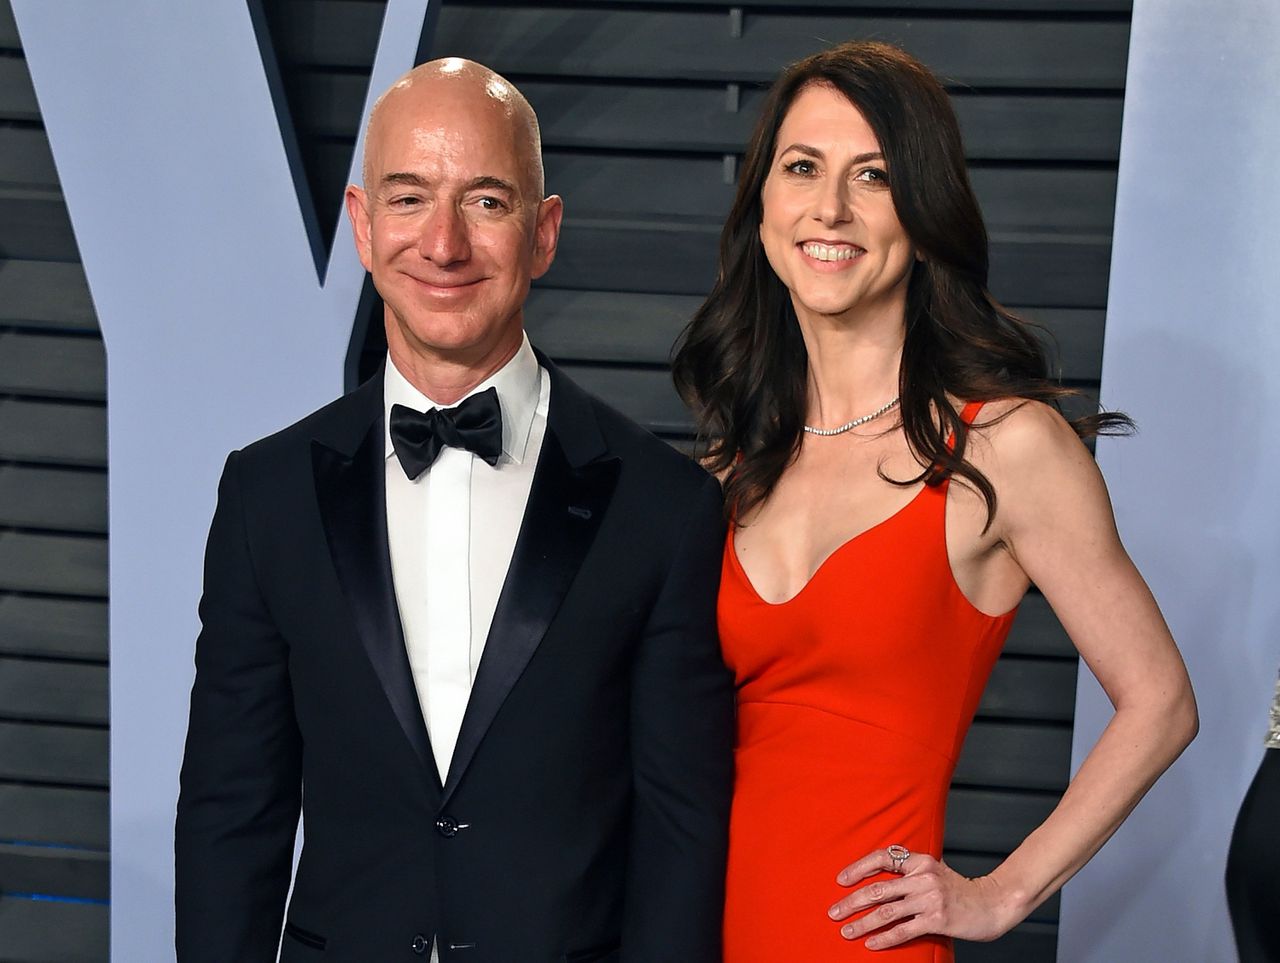 Jeff Bezos en zijn vrouw MacKenzie Bezos. Op dit moment is Jeff Bezos de rijkste man op aarde maar het echtpaar ligt in scheiding.